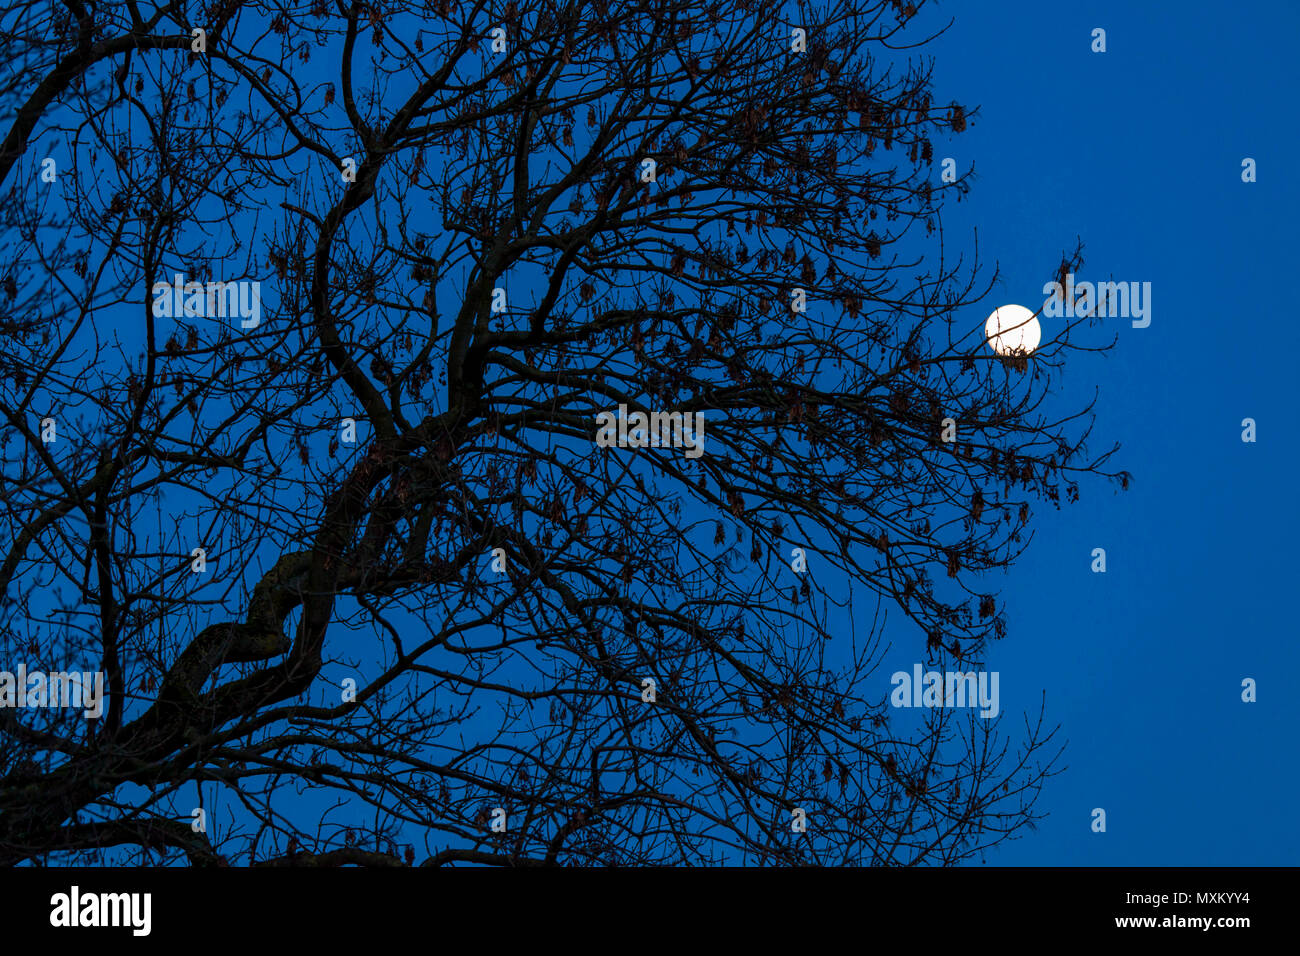 Germania, robinia (Robinia pseudoacacia) e il sorgere della luna. Deutschland, Robinie (Robinia pseudoacacia), Mondaufgang. Foto Stock